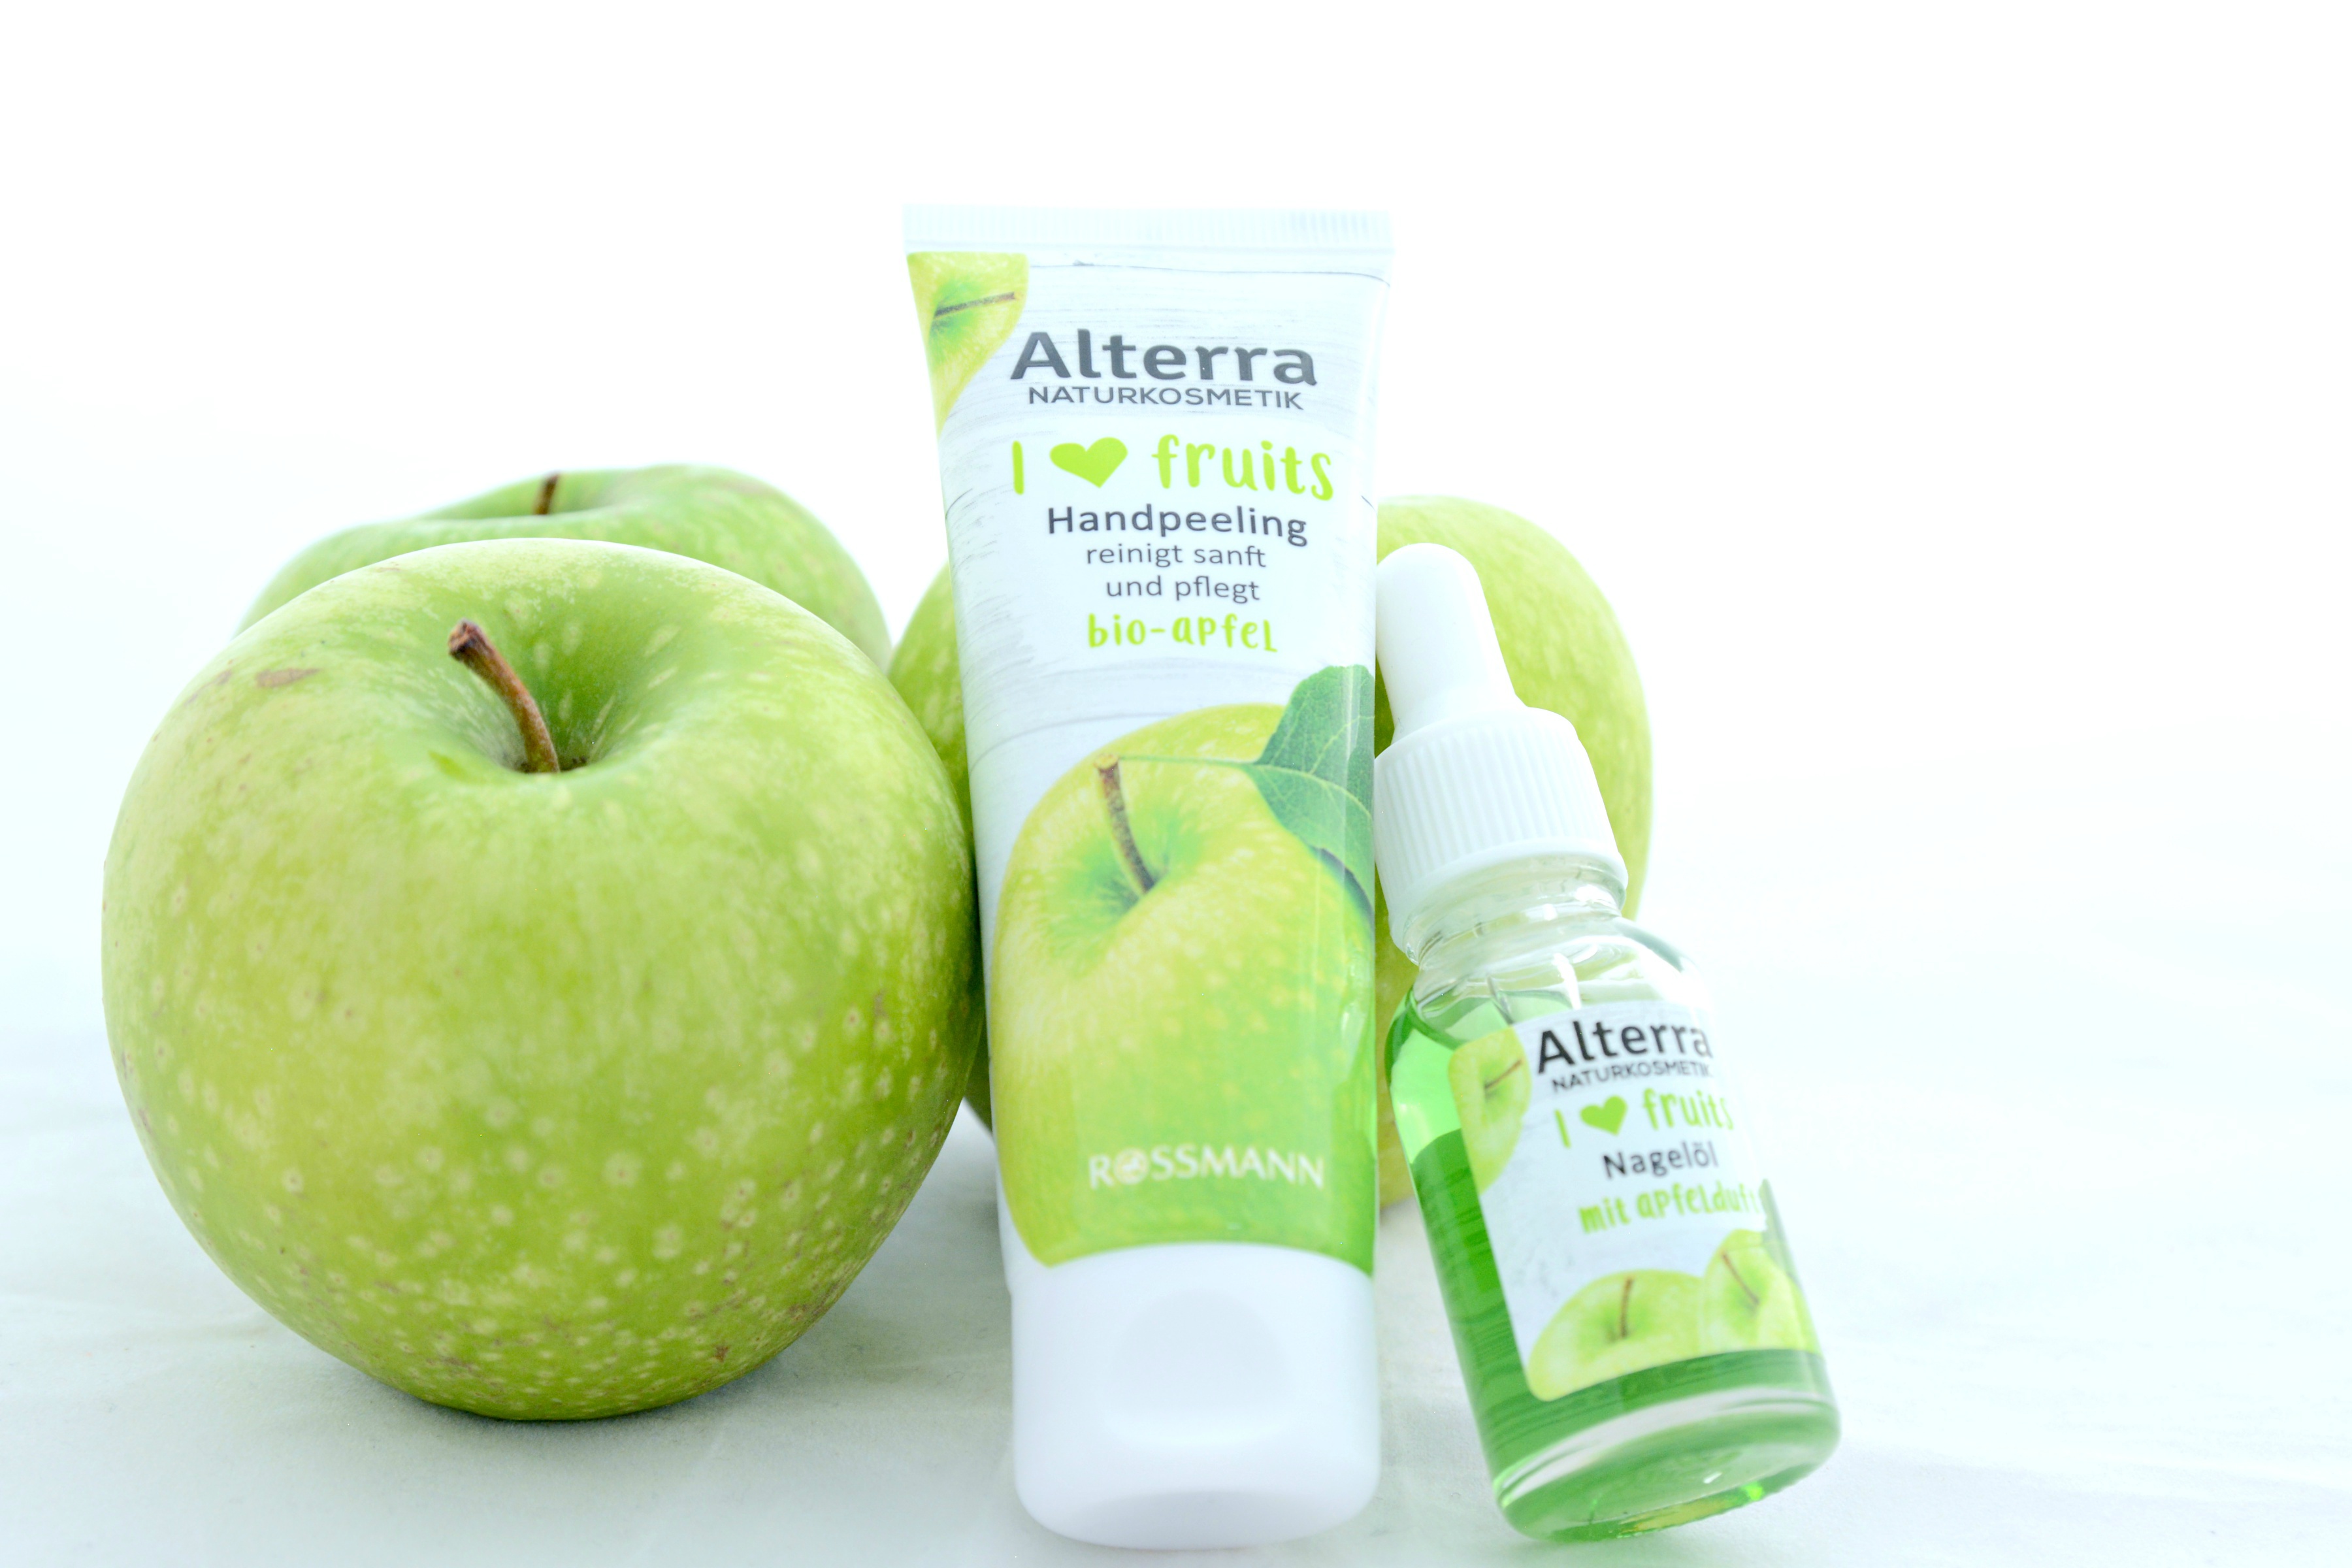 Die I <3 fruits Bio-Apfel Produkte von Alterra Naturkosmetik